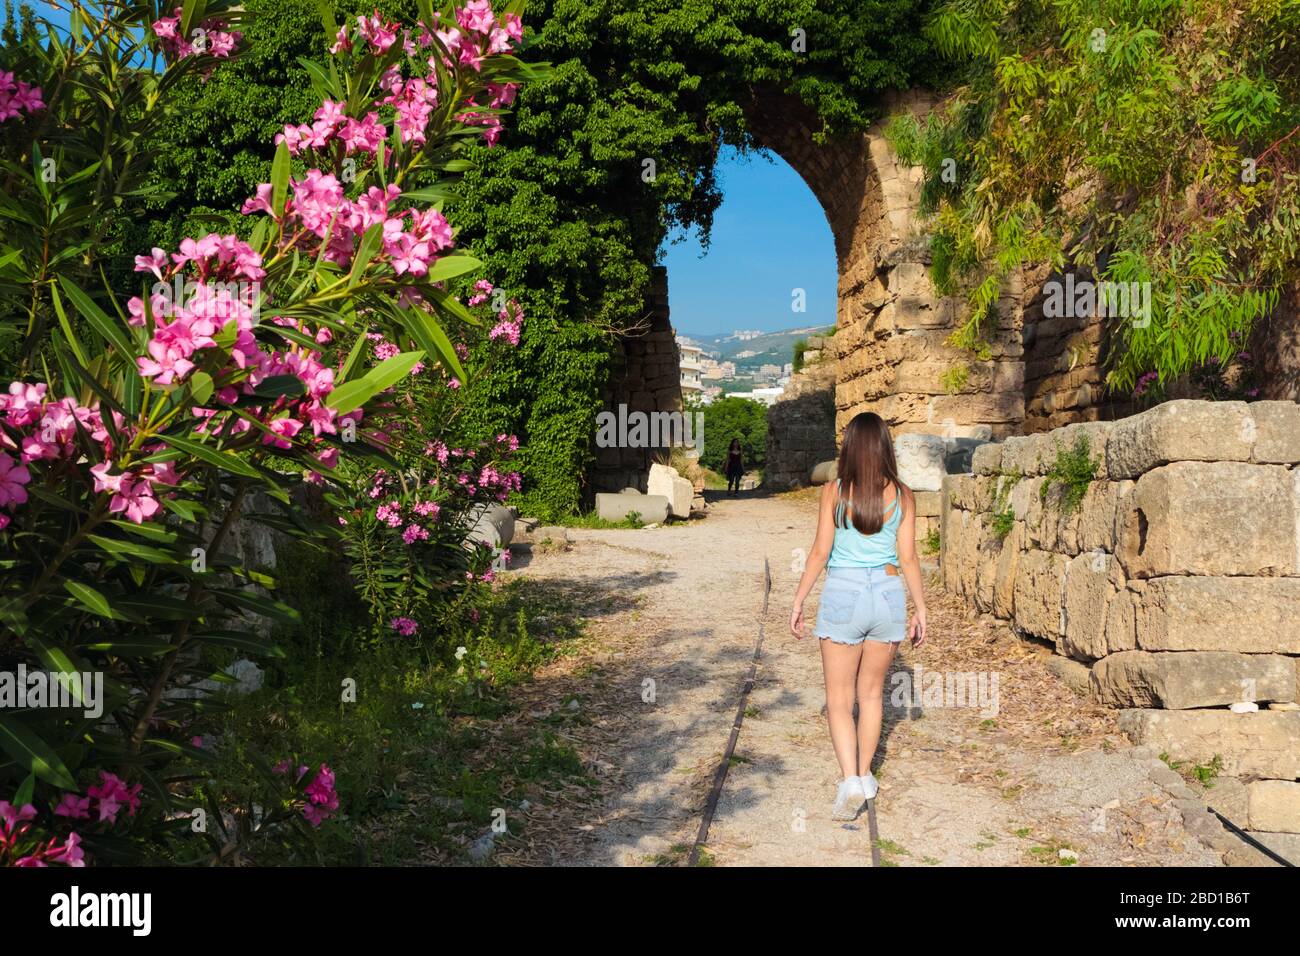 Byblos, Libanon - 12. Mai 2017: Unbekannte Touristendame in Casual Wear beim Betreten des Kreuzritterschlosses in Byblos, Libanon. Stockfoto